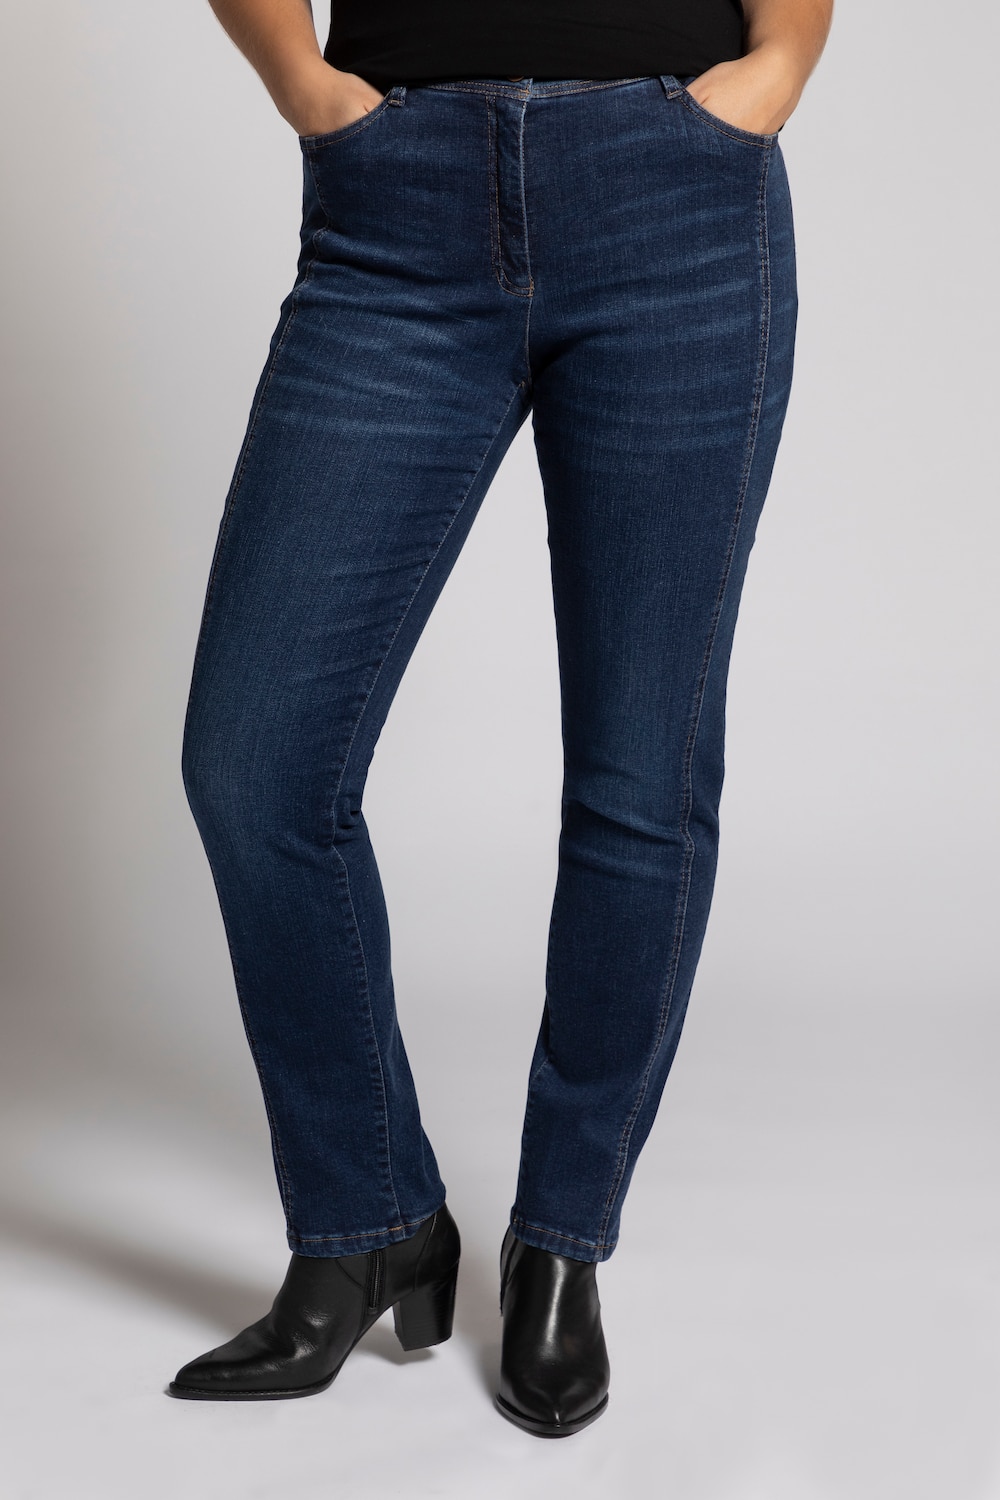 Grote Maten jeans Sienna, Dames, blauw, Maat: 56, Katoen/Synthetische vezels, Ulla Popken